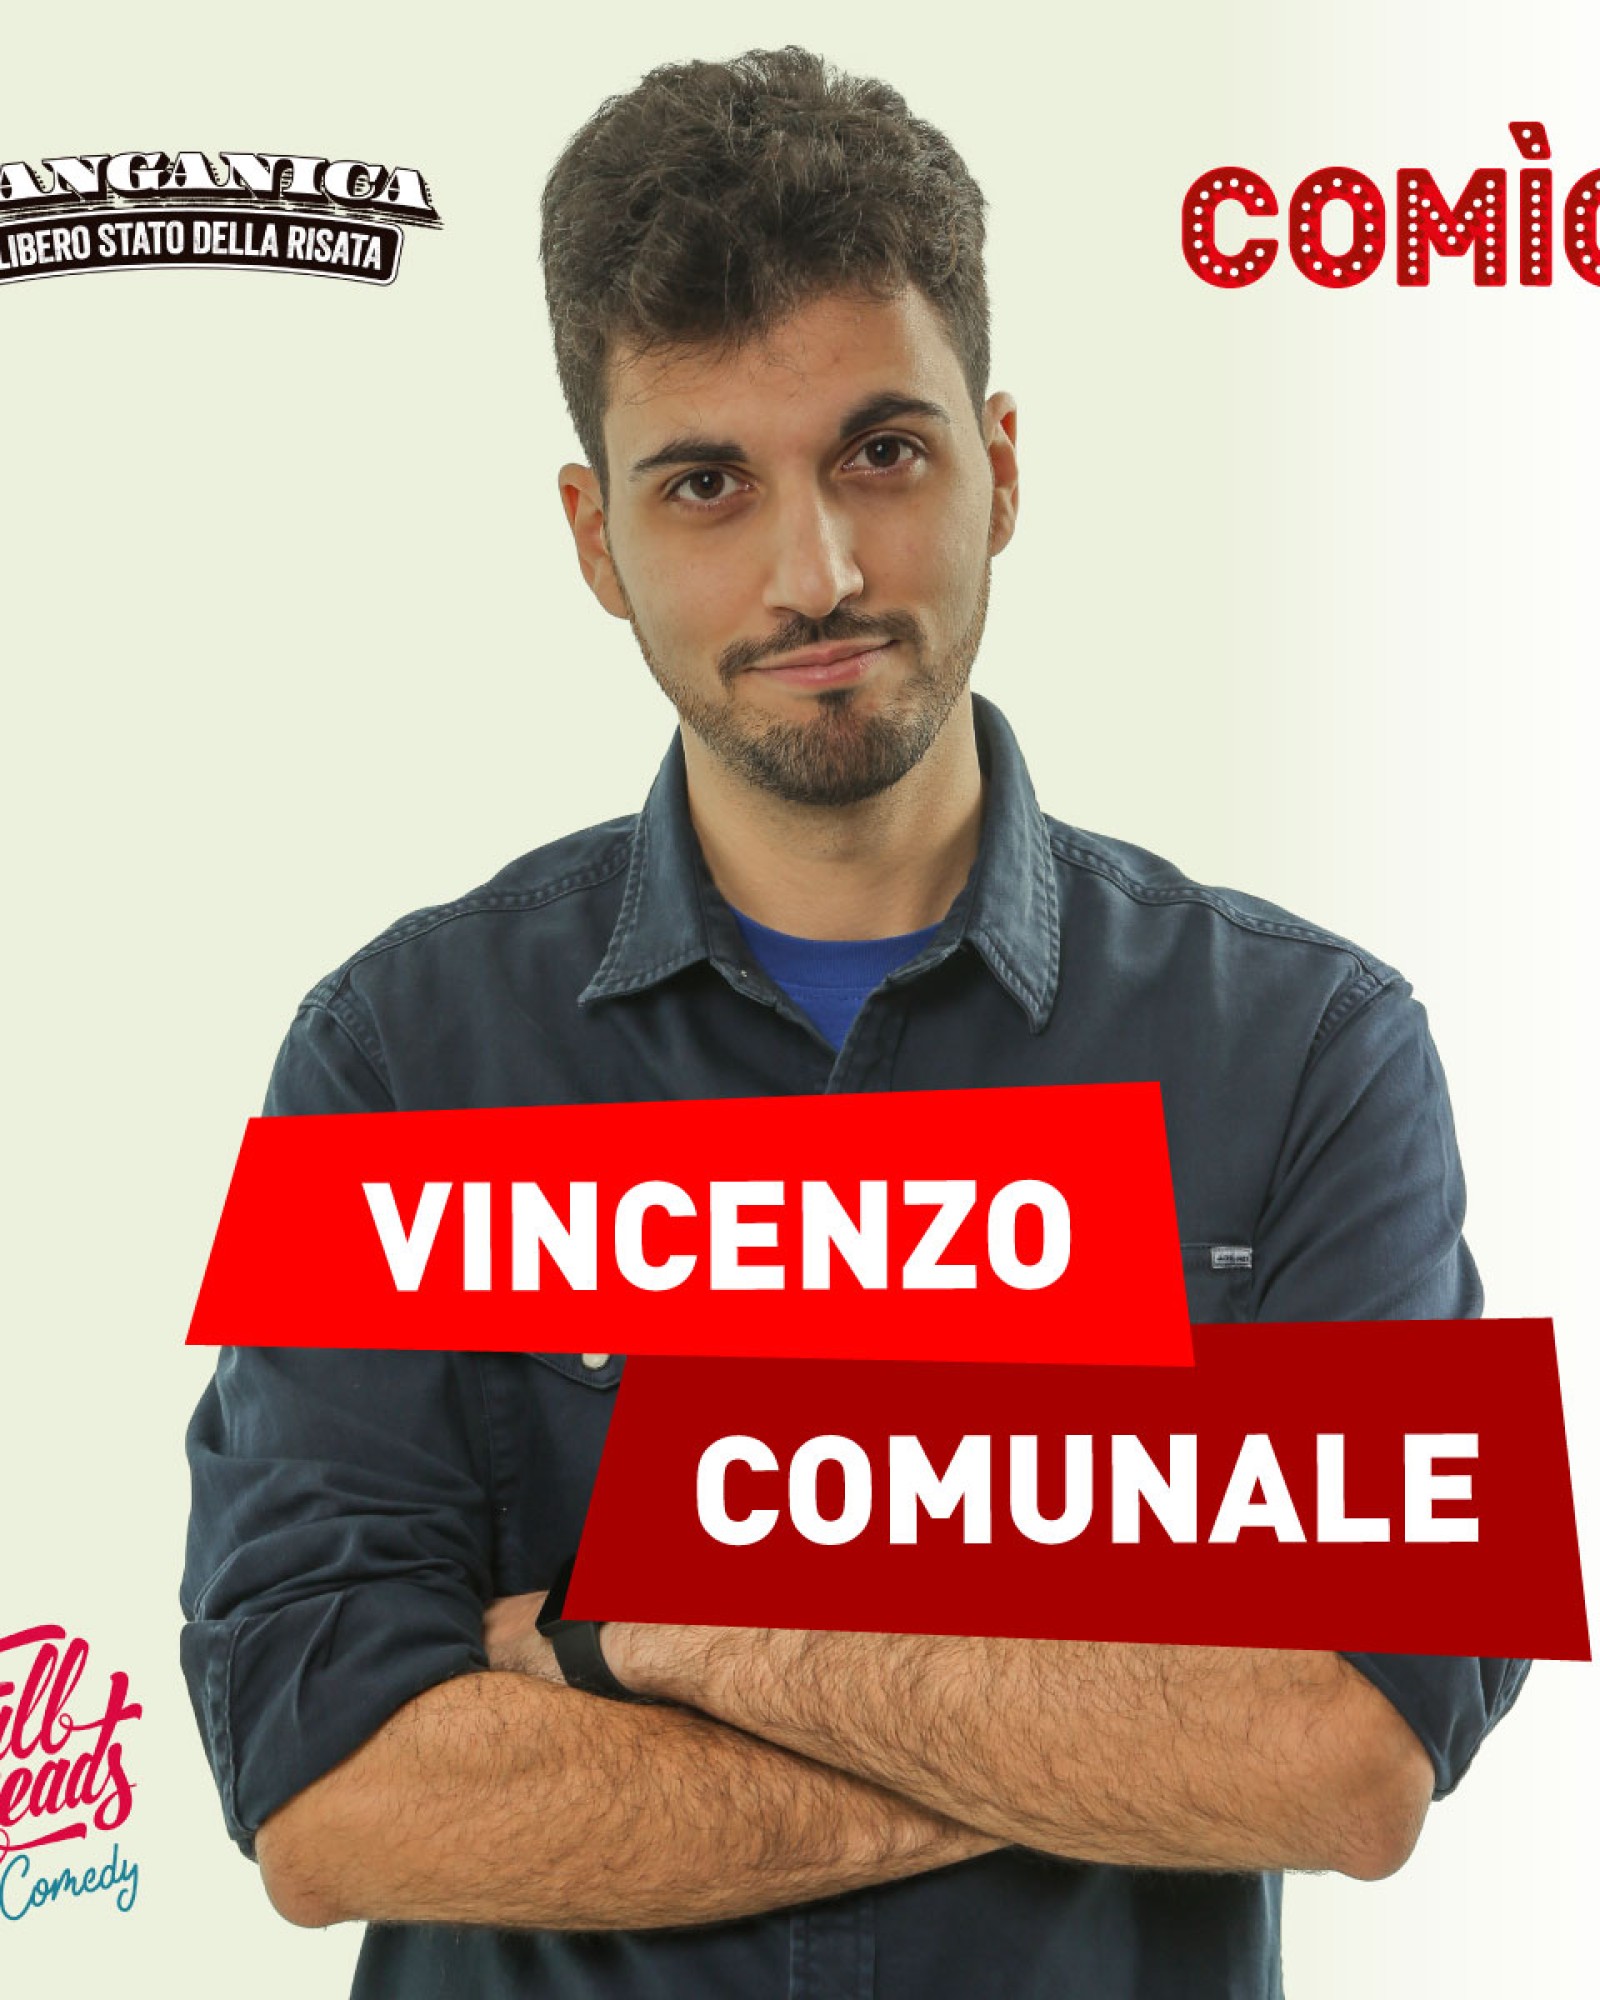 Vincenzo Comunale